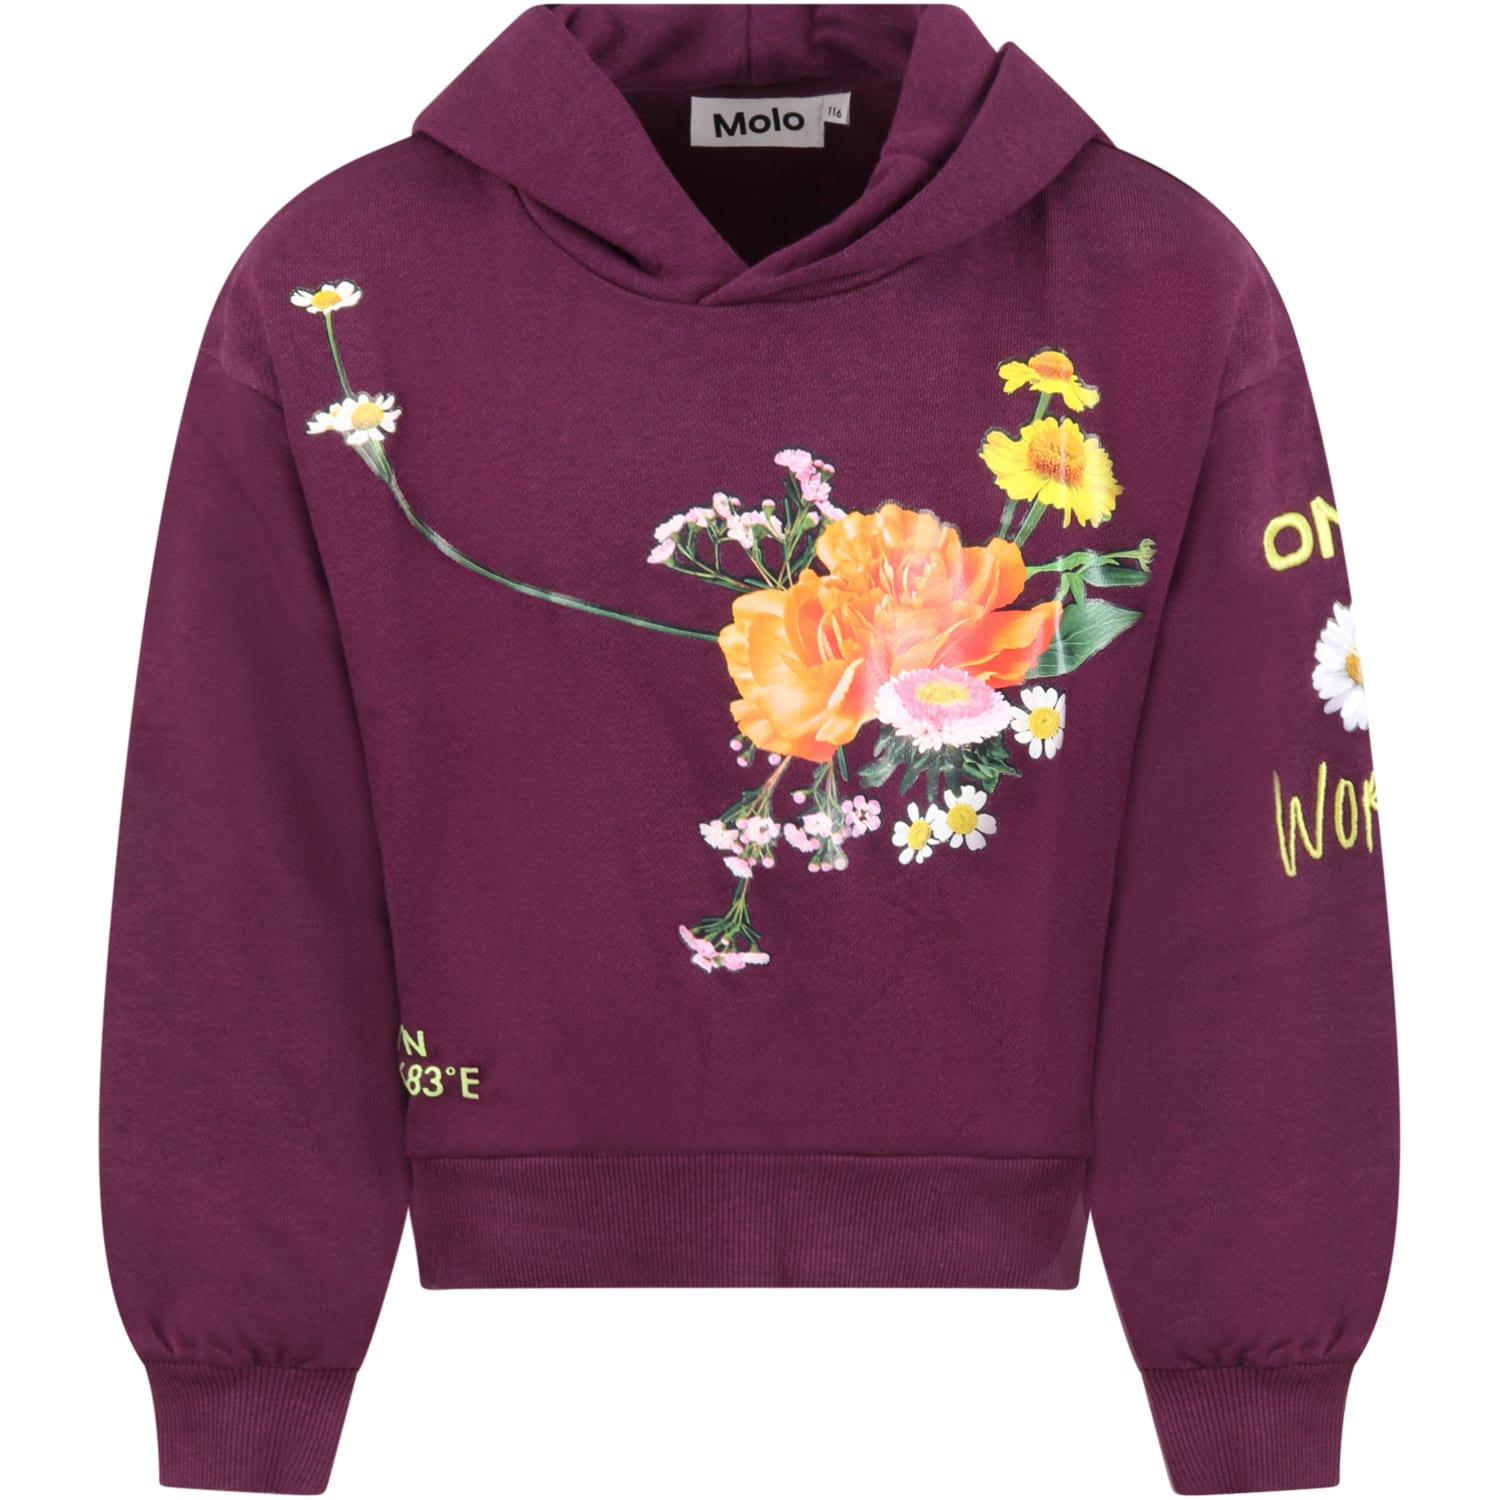 Molo Purple marensweatshirt For Girl With Flowers